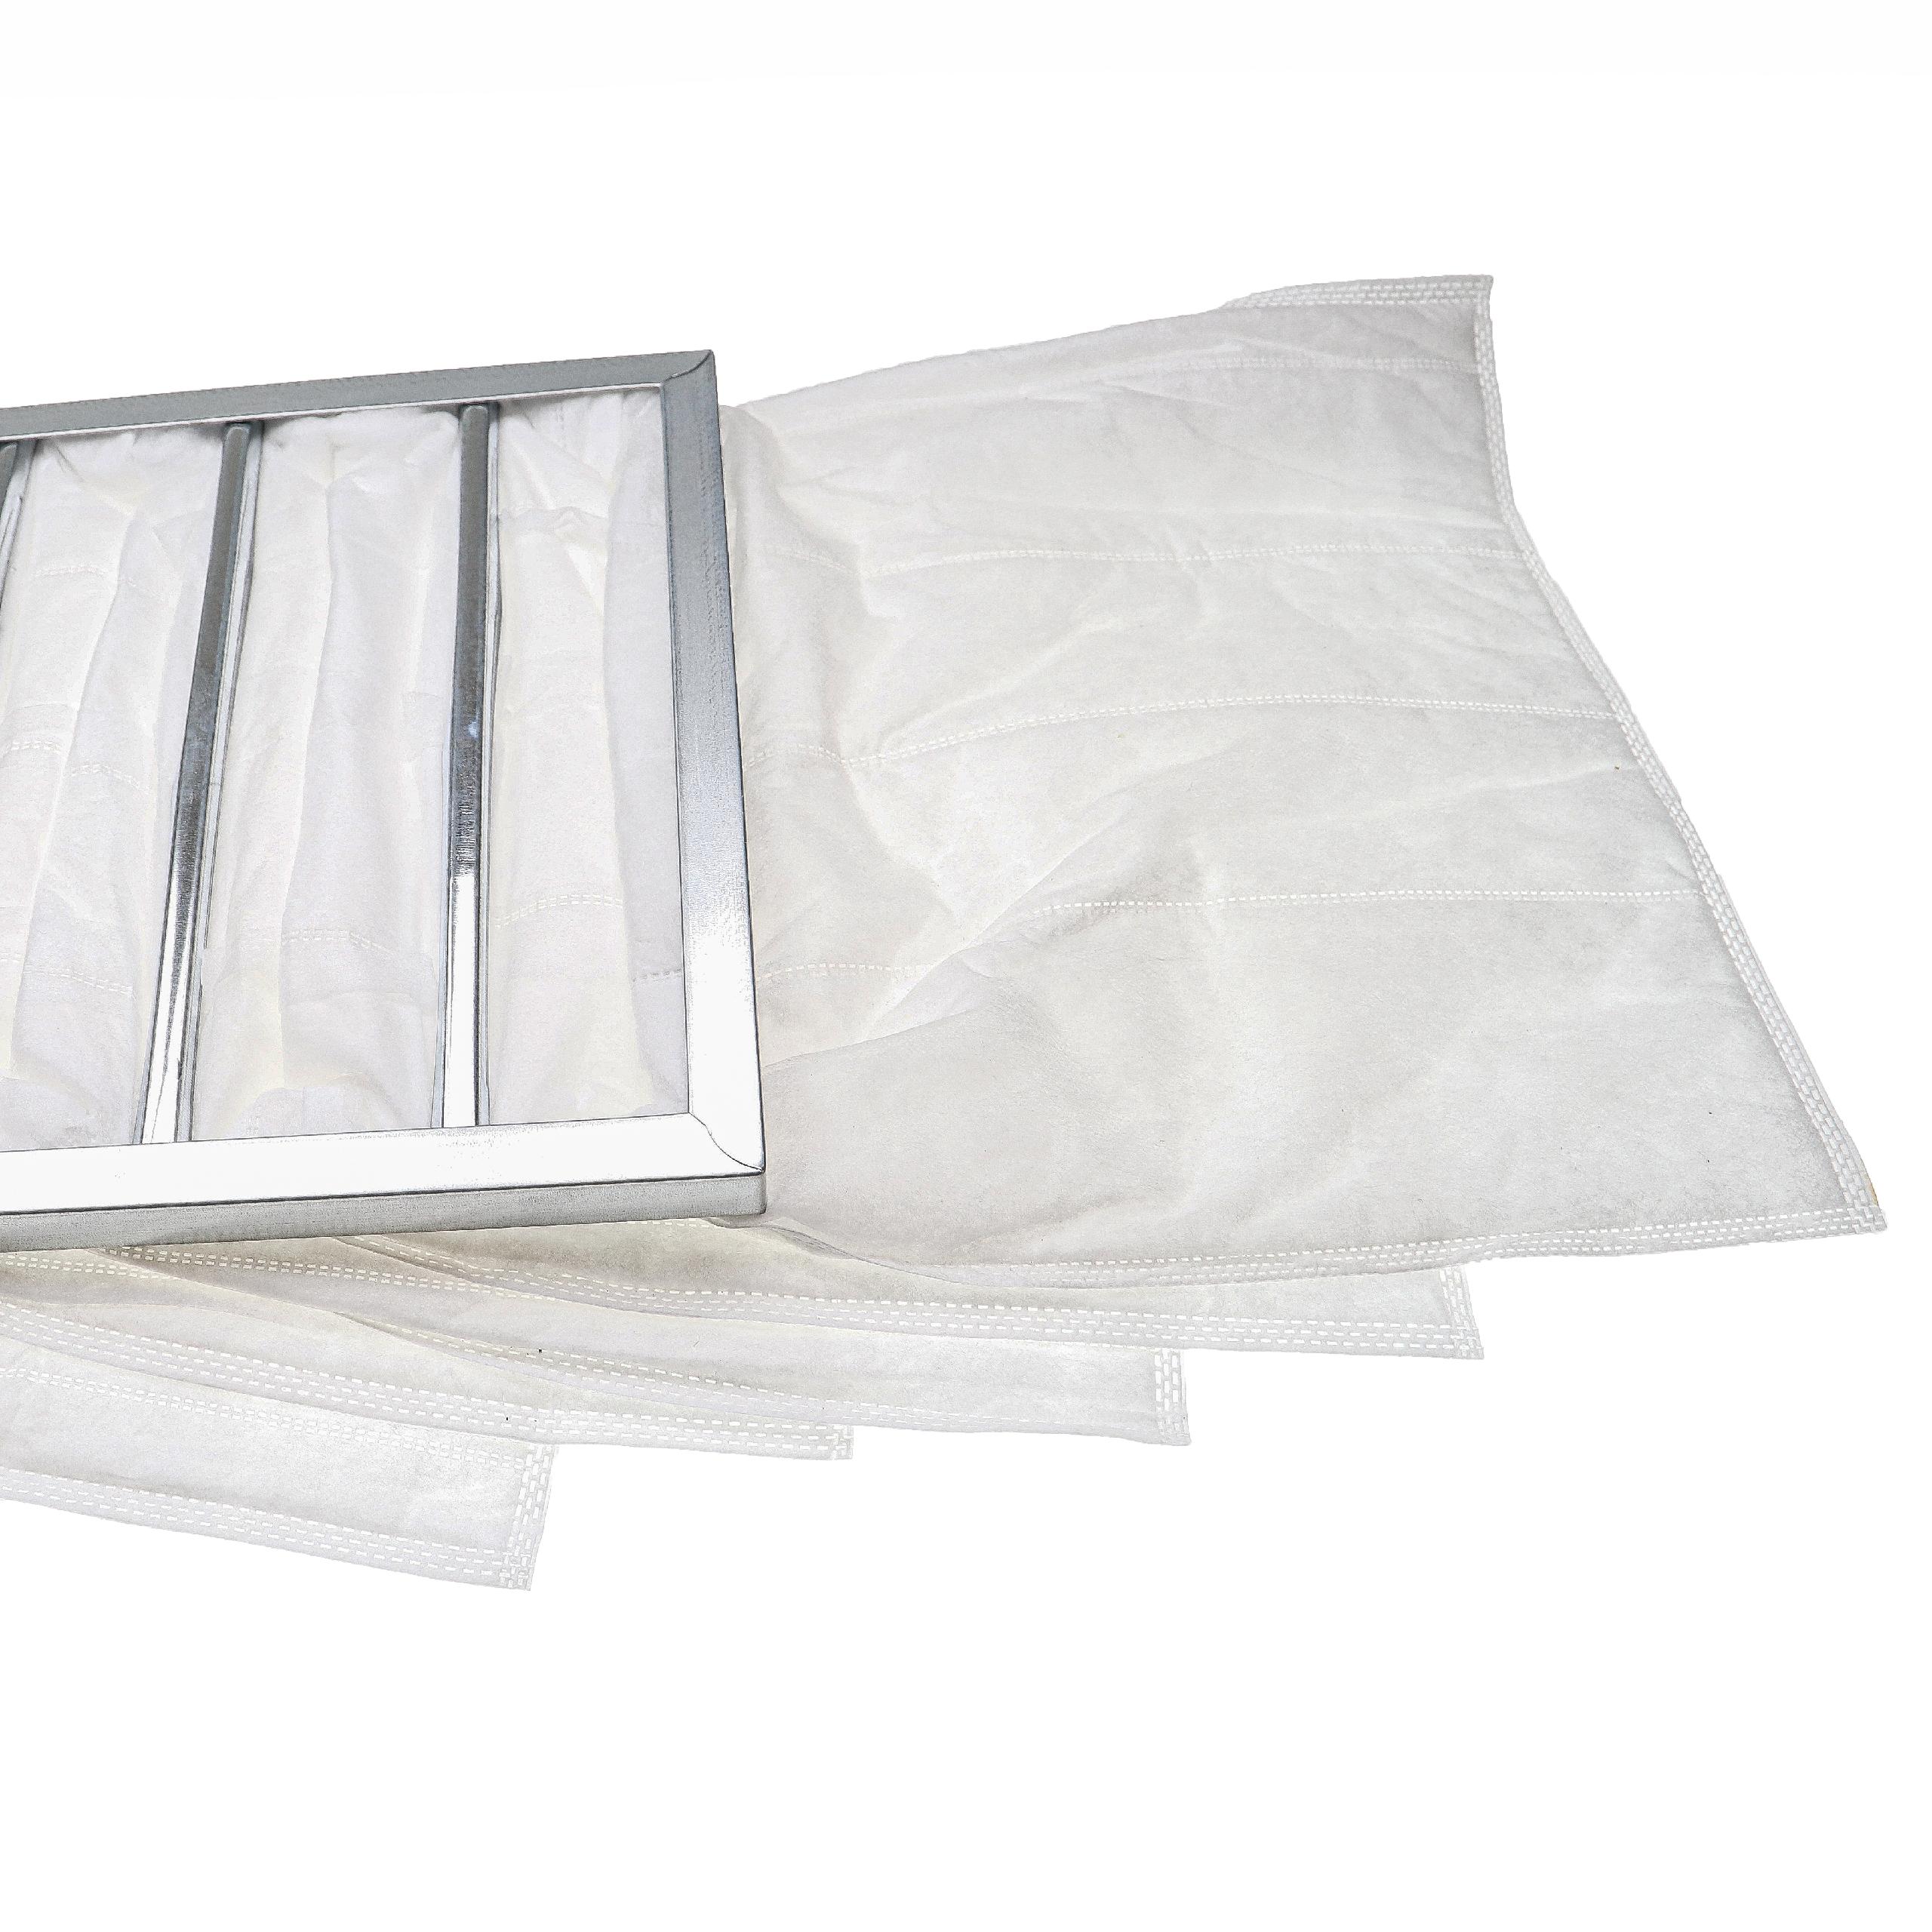 Filtre à poches G4 pour climatiseur, système d'aération - 38 x 29,5 x 59,2 cm